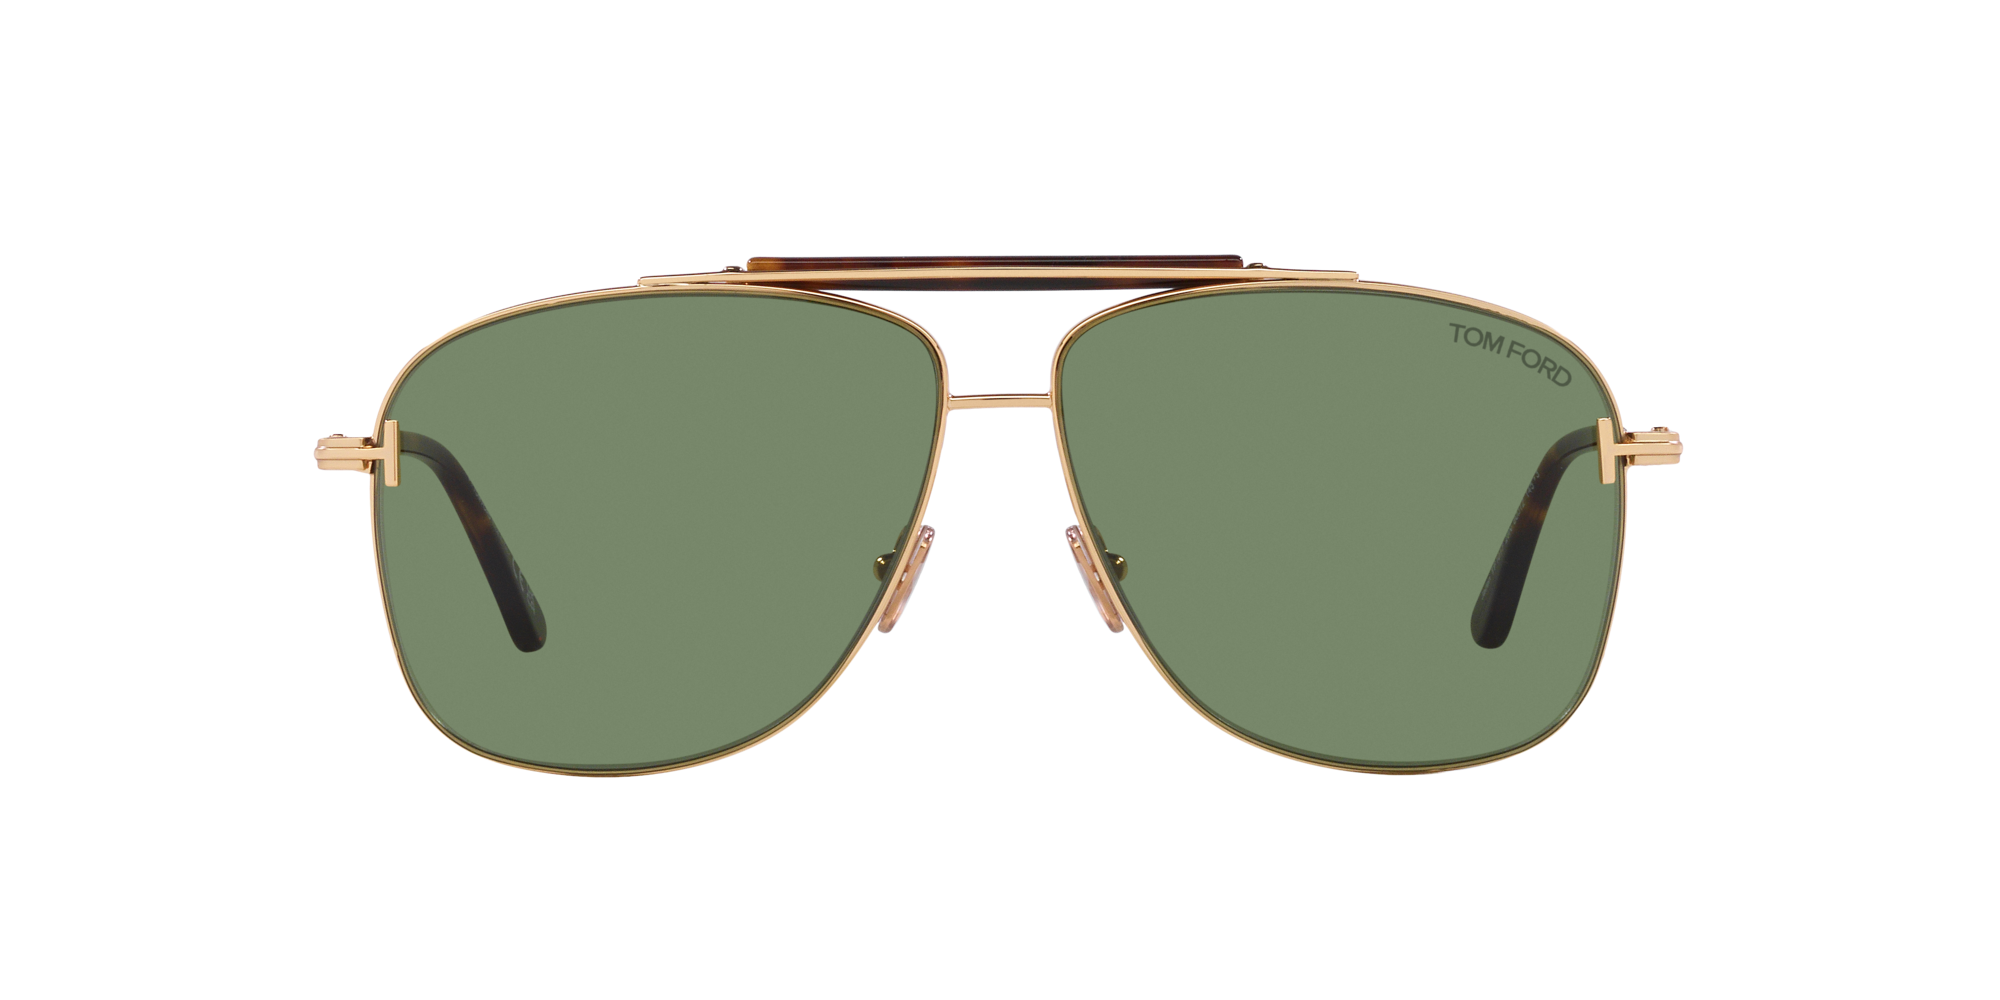 Discover more than 233 tom ford pilot sunglasses